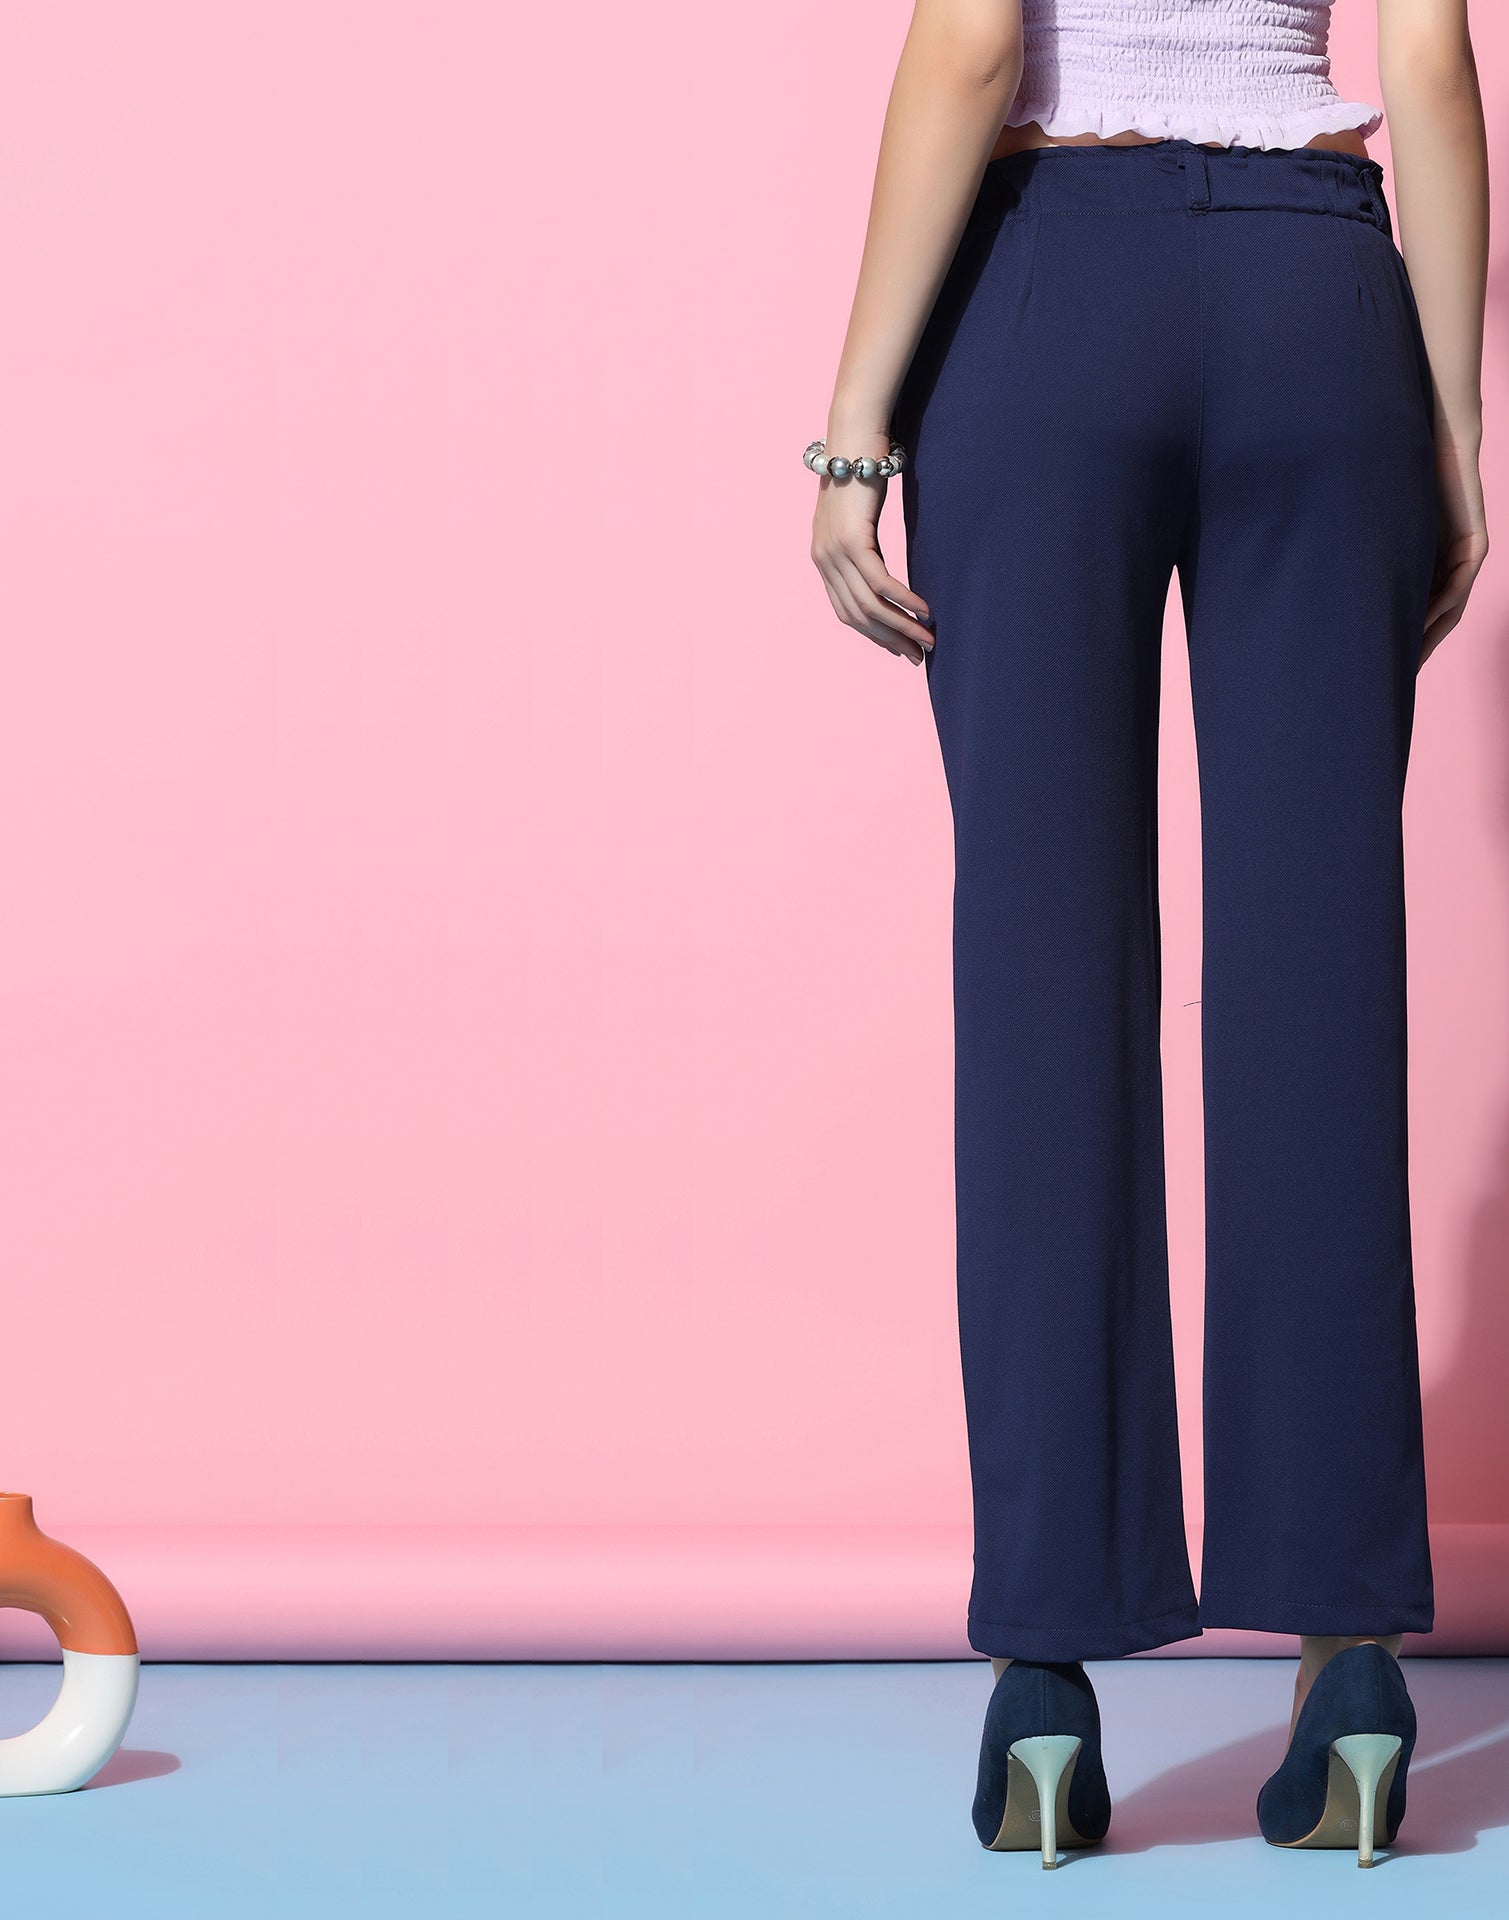 Buy Navy Blue Trousers  Pants for Women by BANI WOMEN Online  Ajiocom